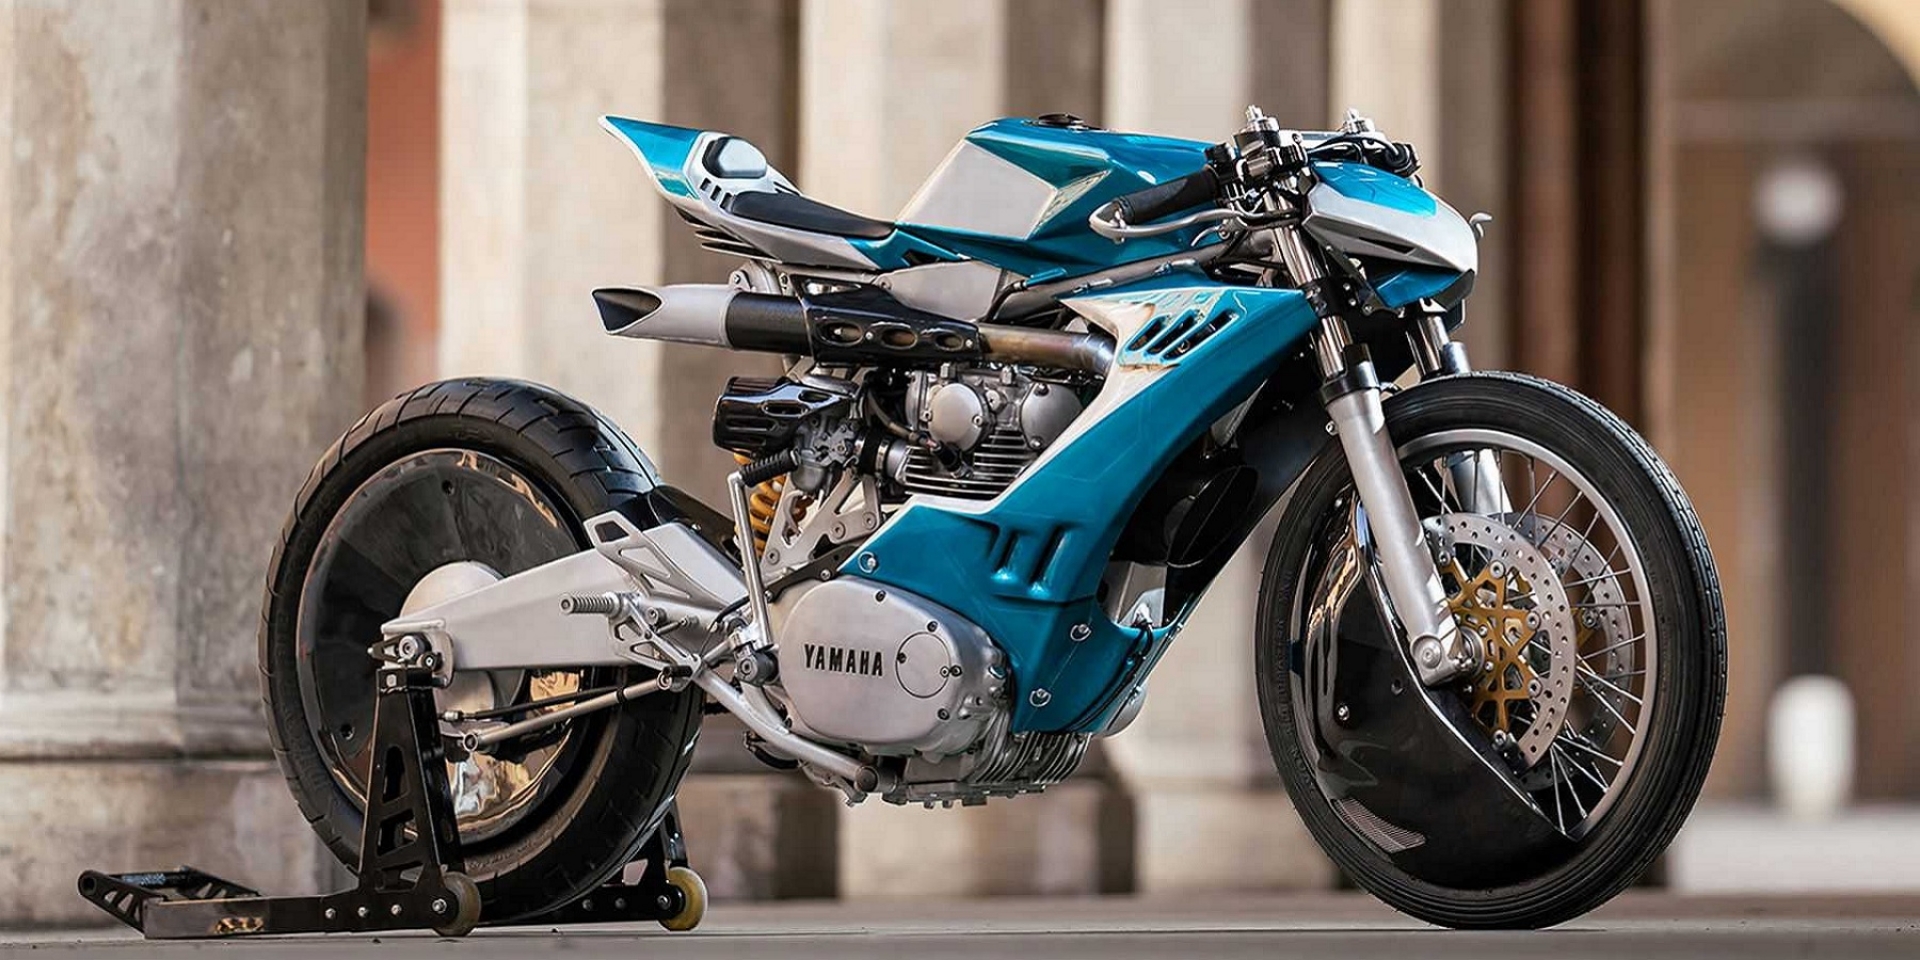 復古與未來感融合。Yamaha XS650 by Simone Corti